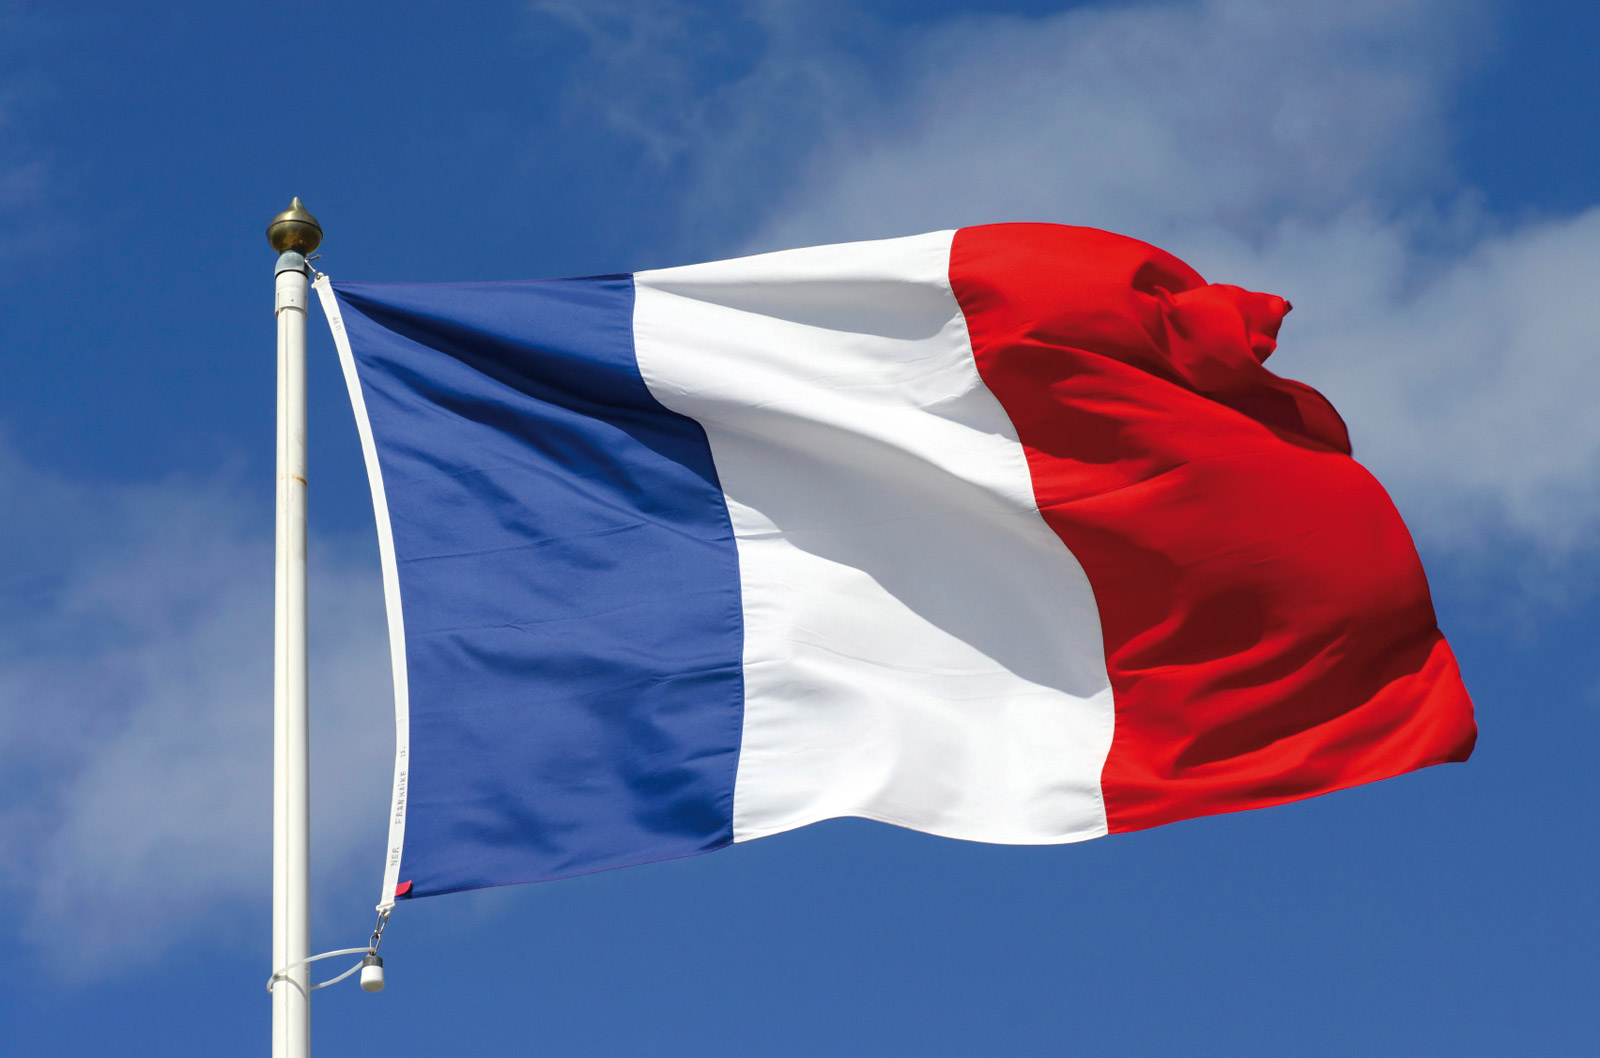 العلم الفرنسي باللون الازرق